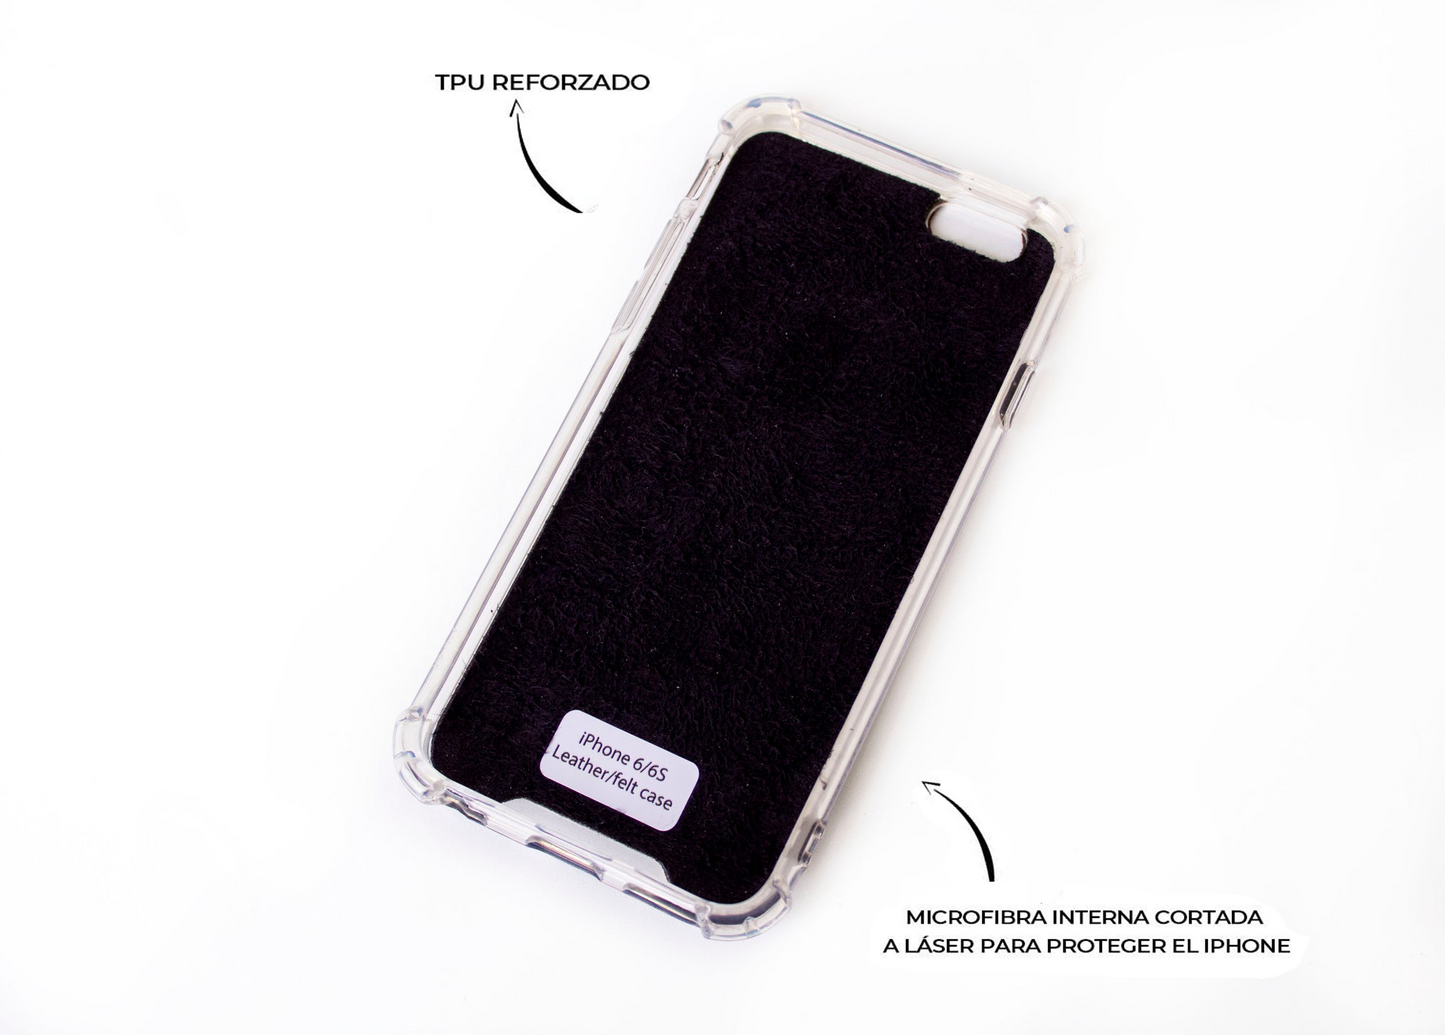 Funda para iPhone de Cuero Genuino Cocodrilo Marrón Texturizado cortado y grabado con láser, 5 Remaches de Bronce.- F36